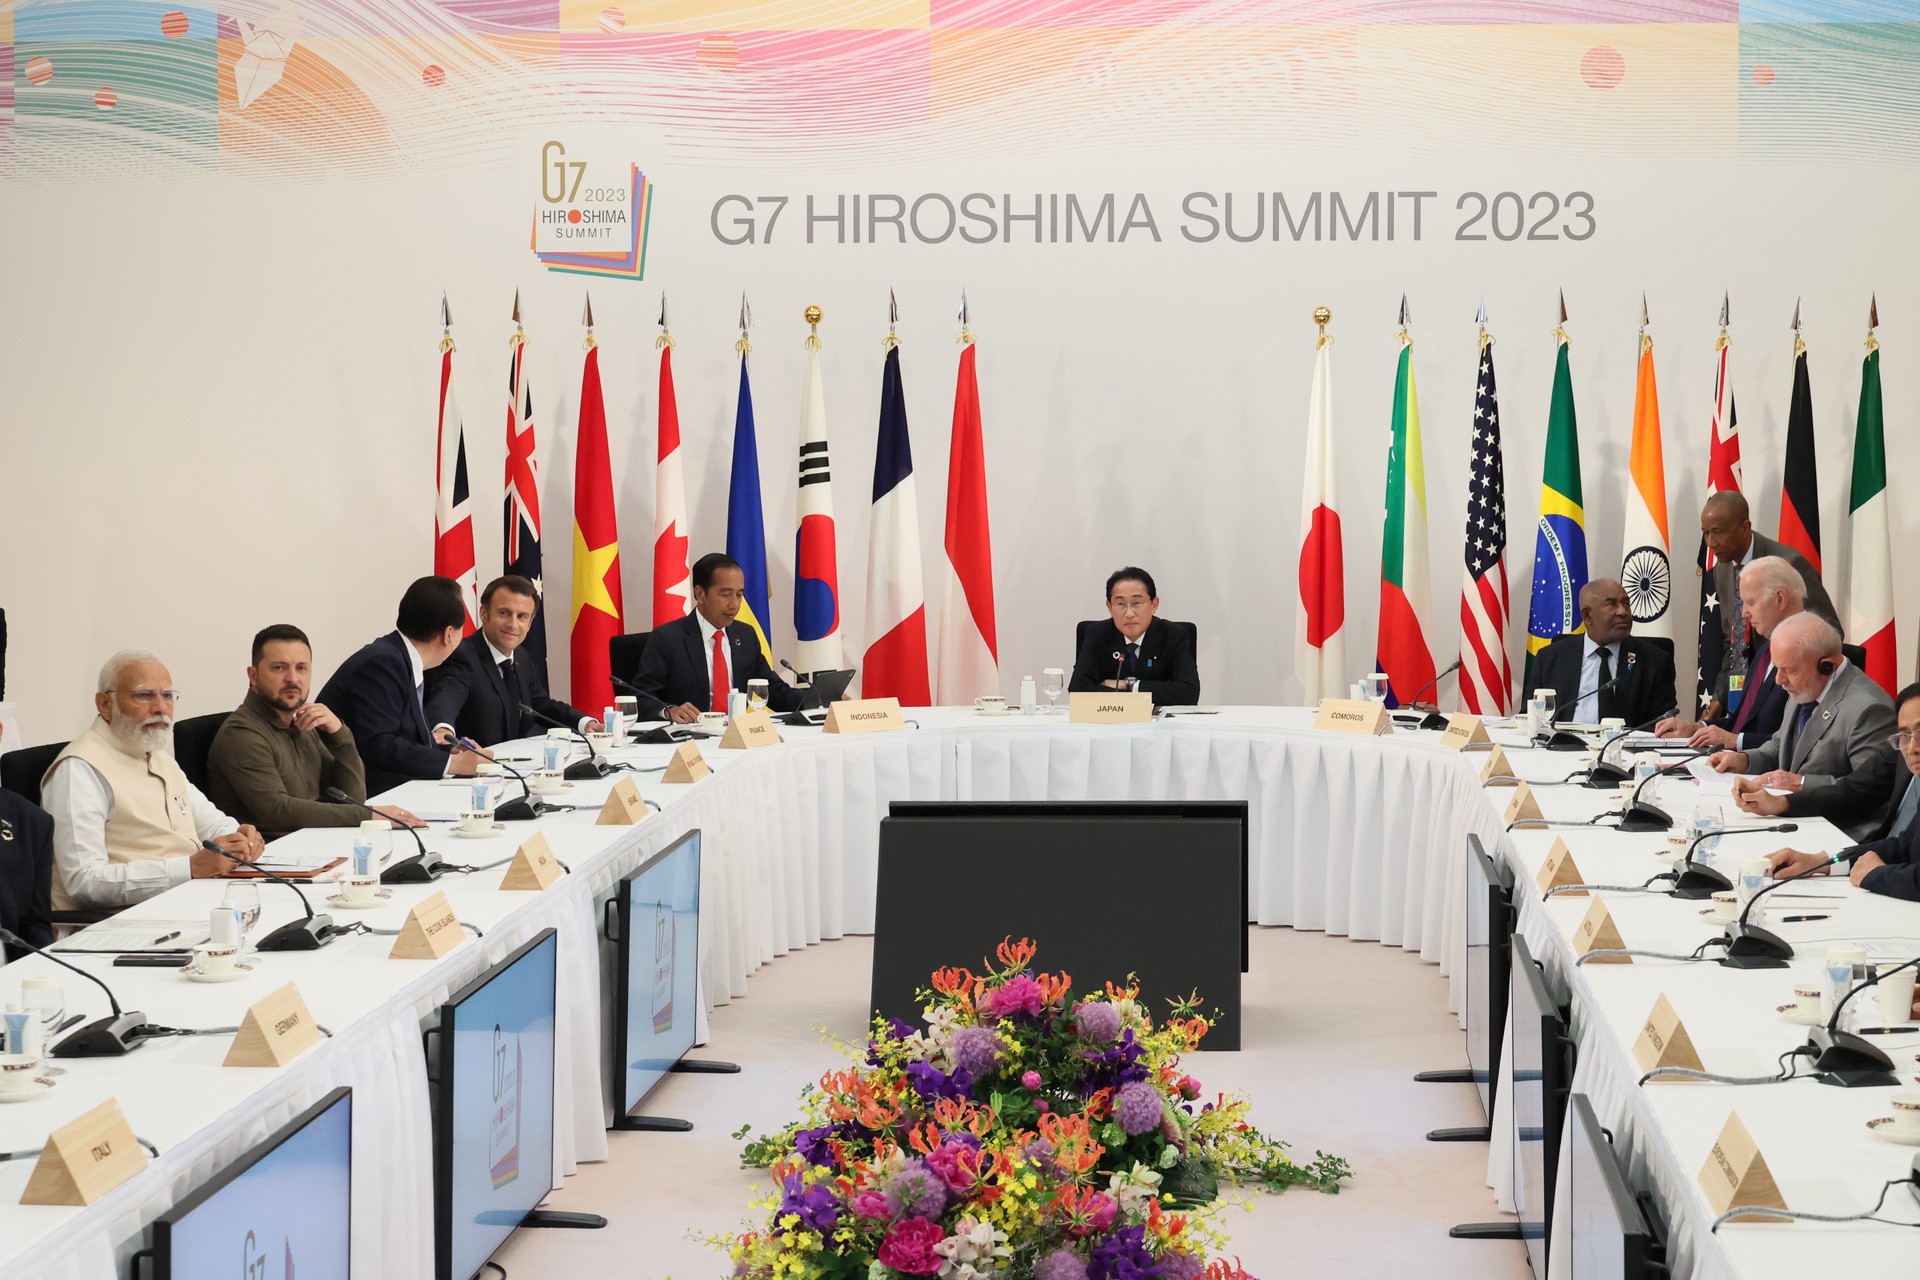 В США раскрыли истинную причину встречи лидеров G7